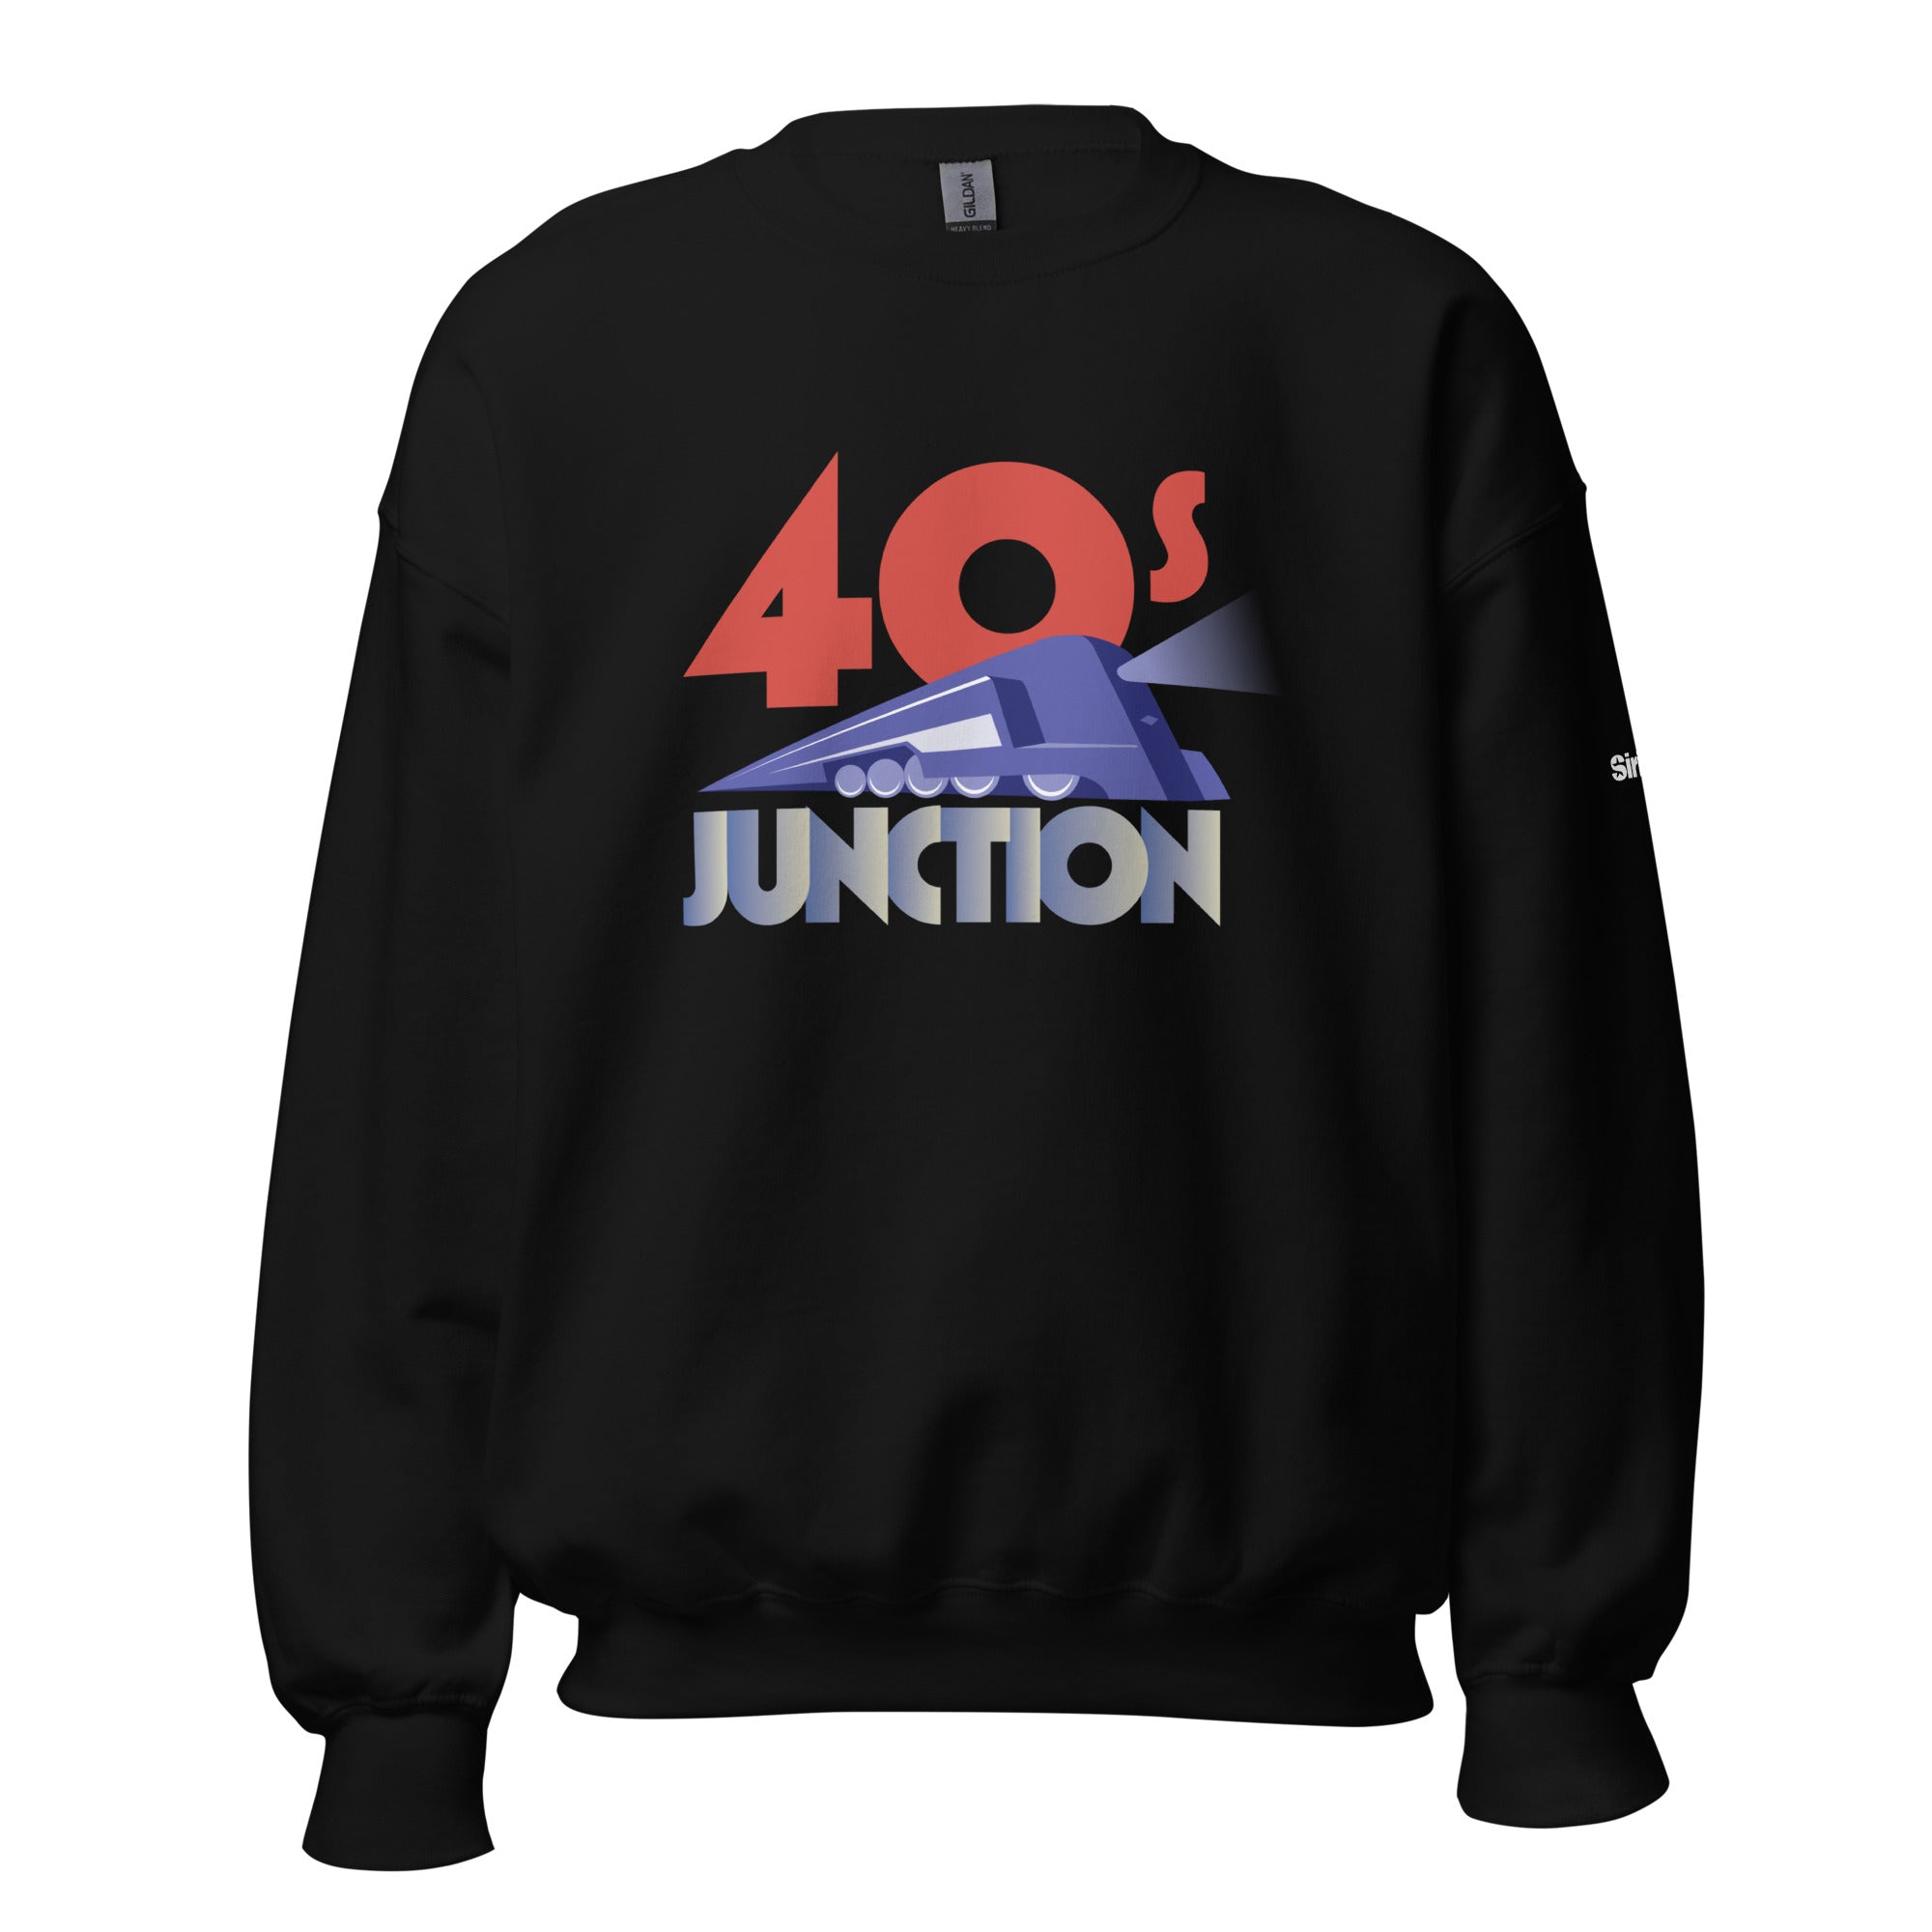 40s Junction: Sweatshirt (Black)